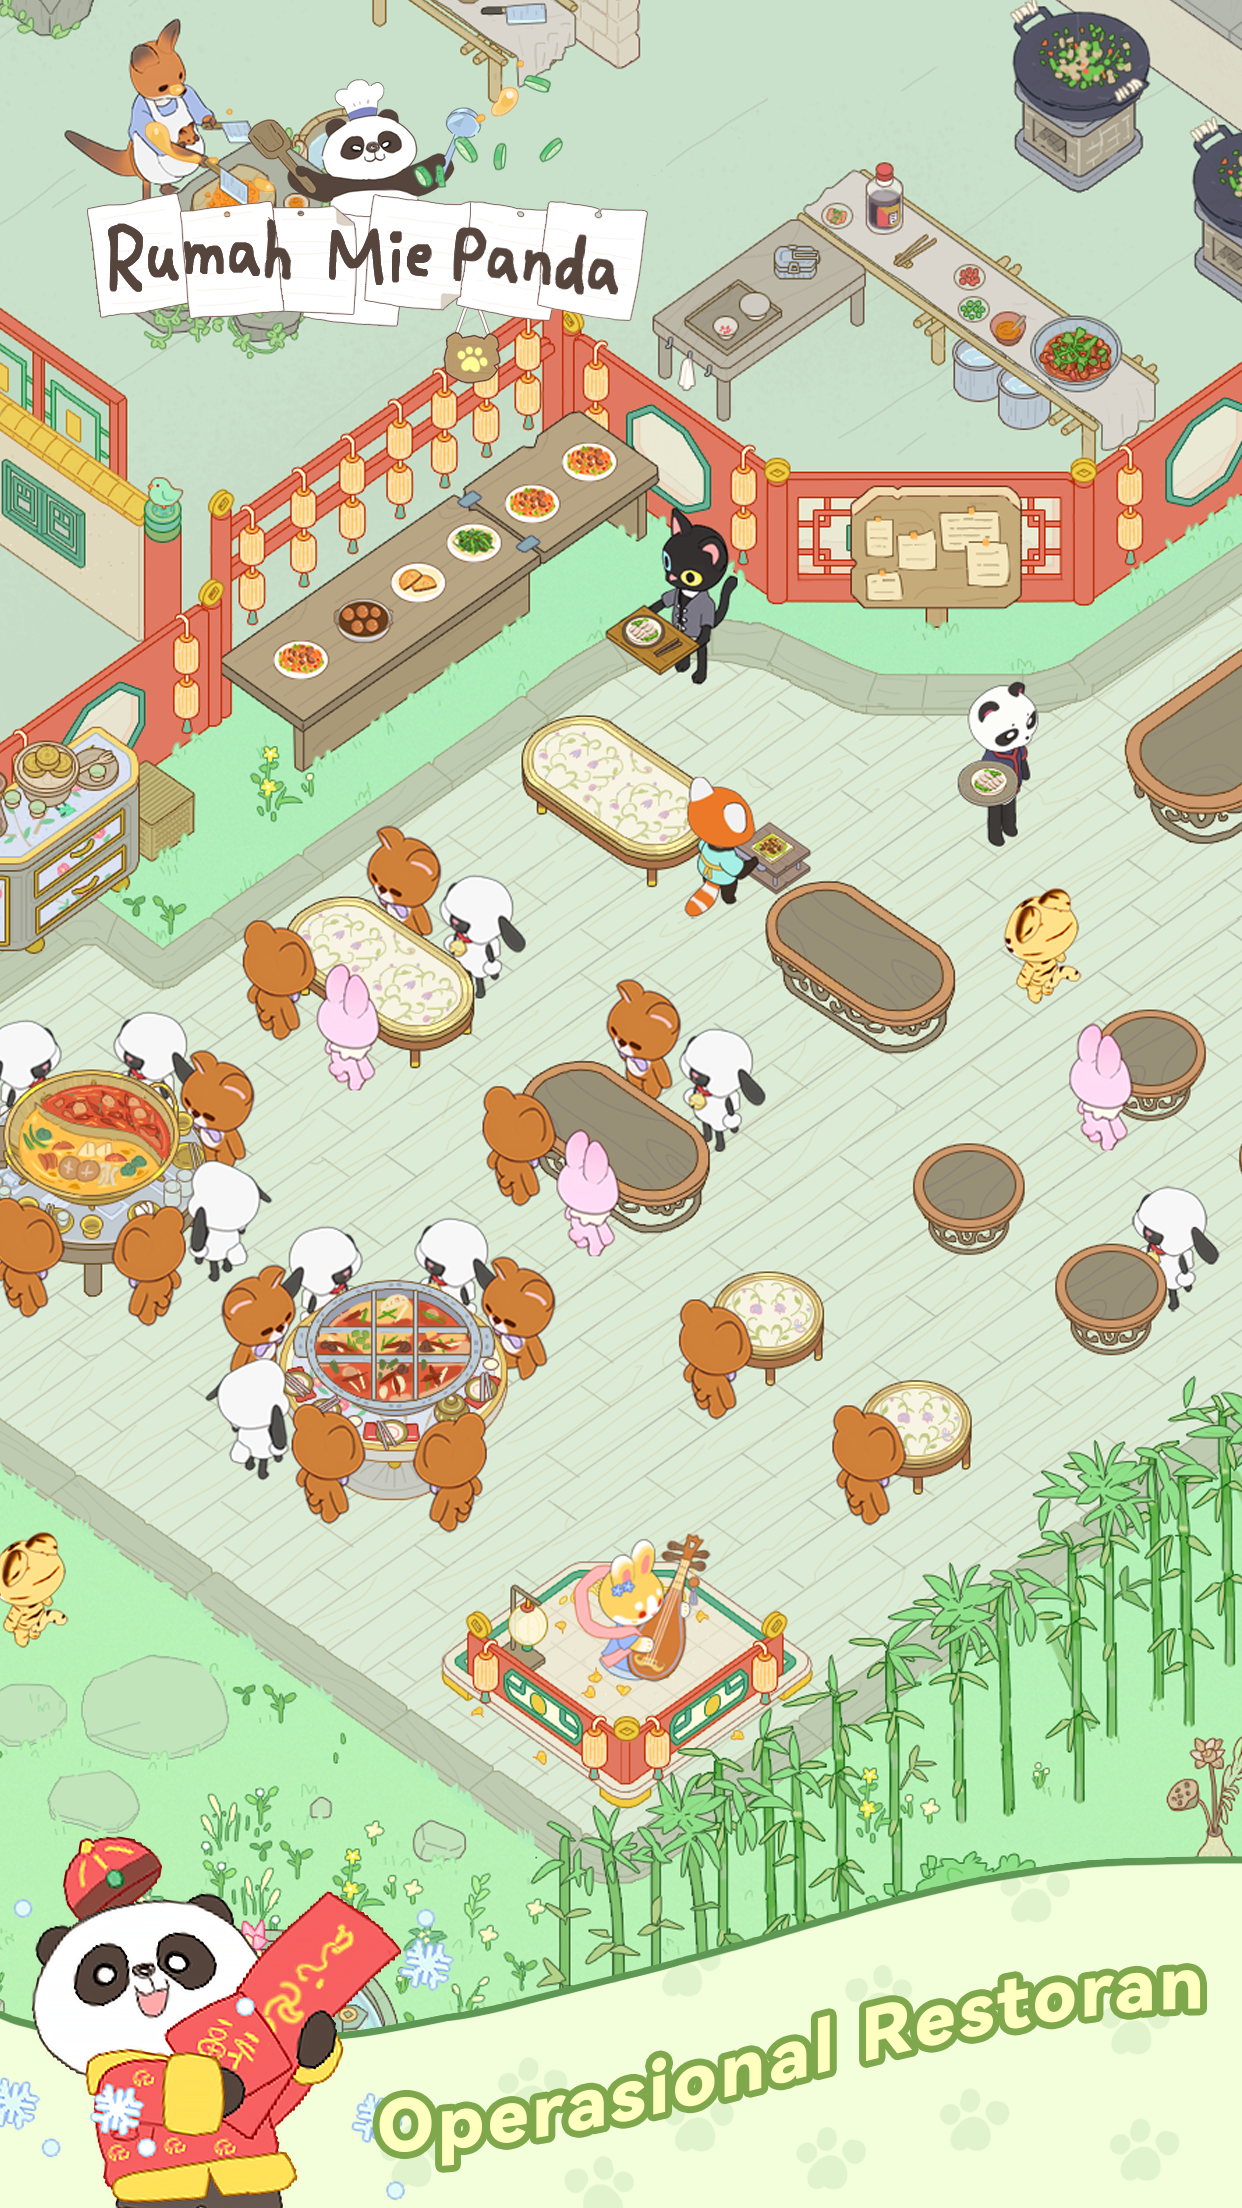 Screenshot 1 of Rumah Mie Panda 1.3.2